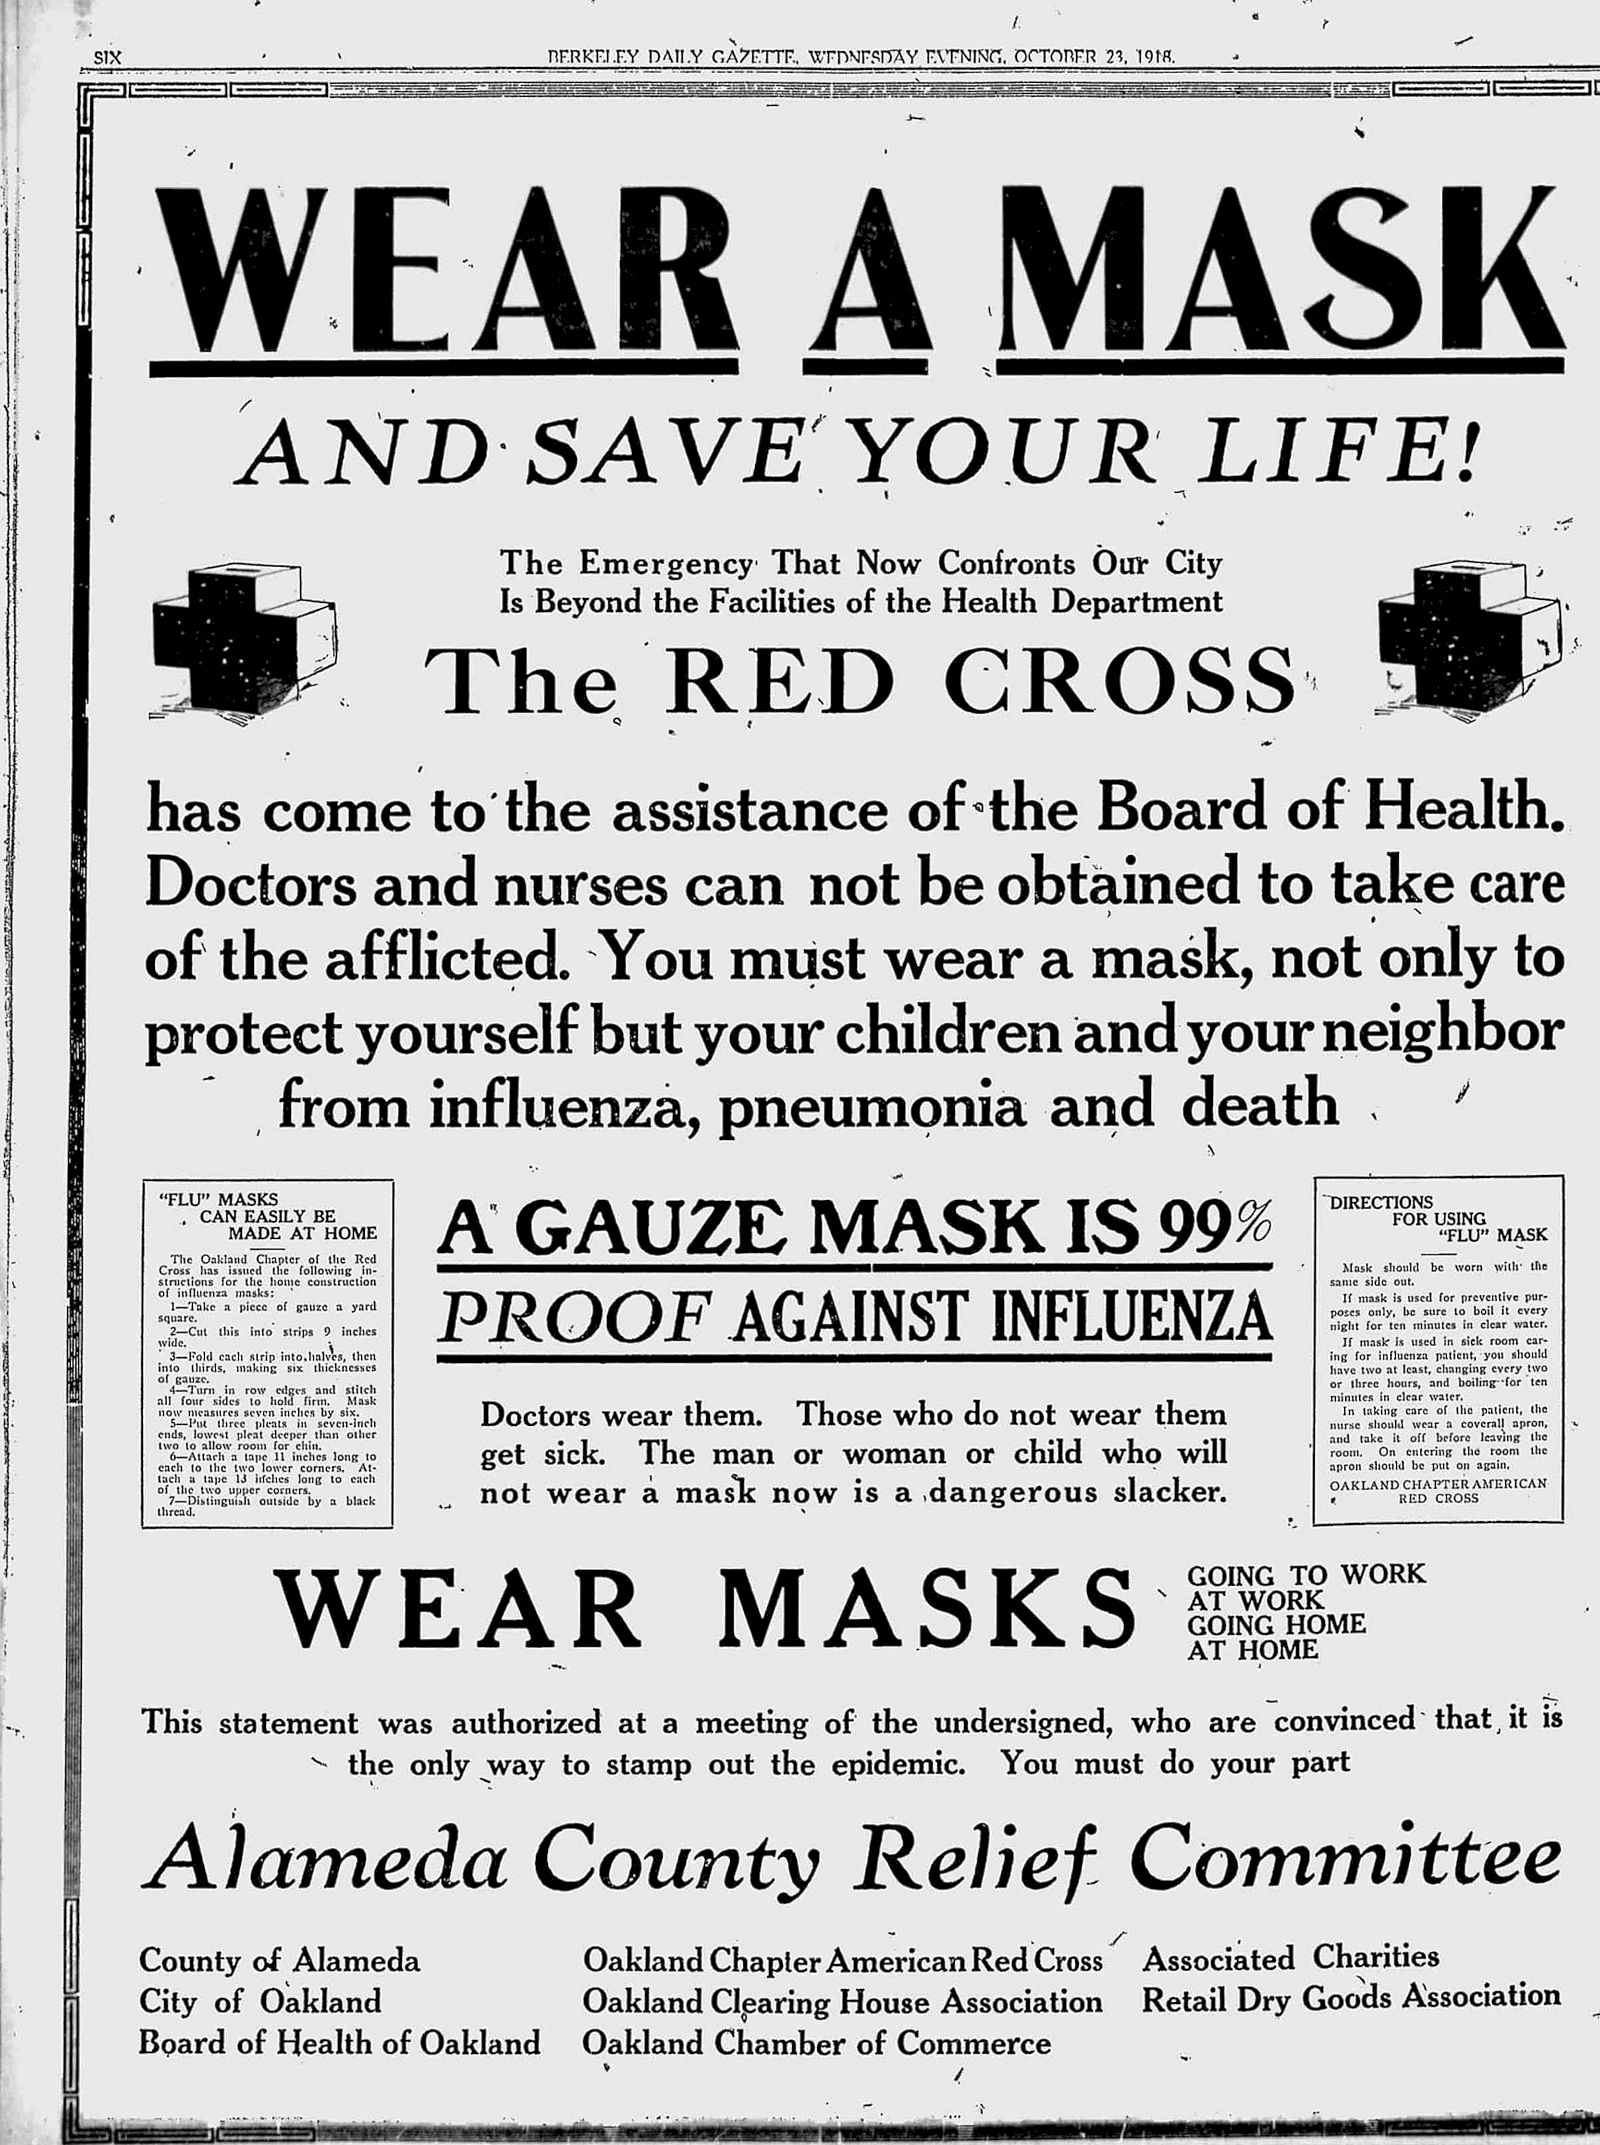 Der wahre Grund für die Maskenpflicht in der Pandemie